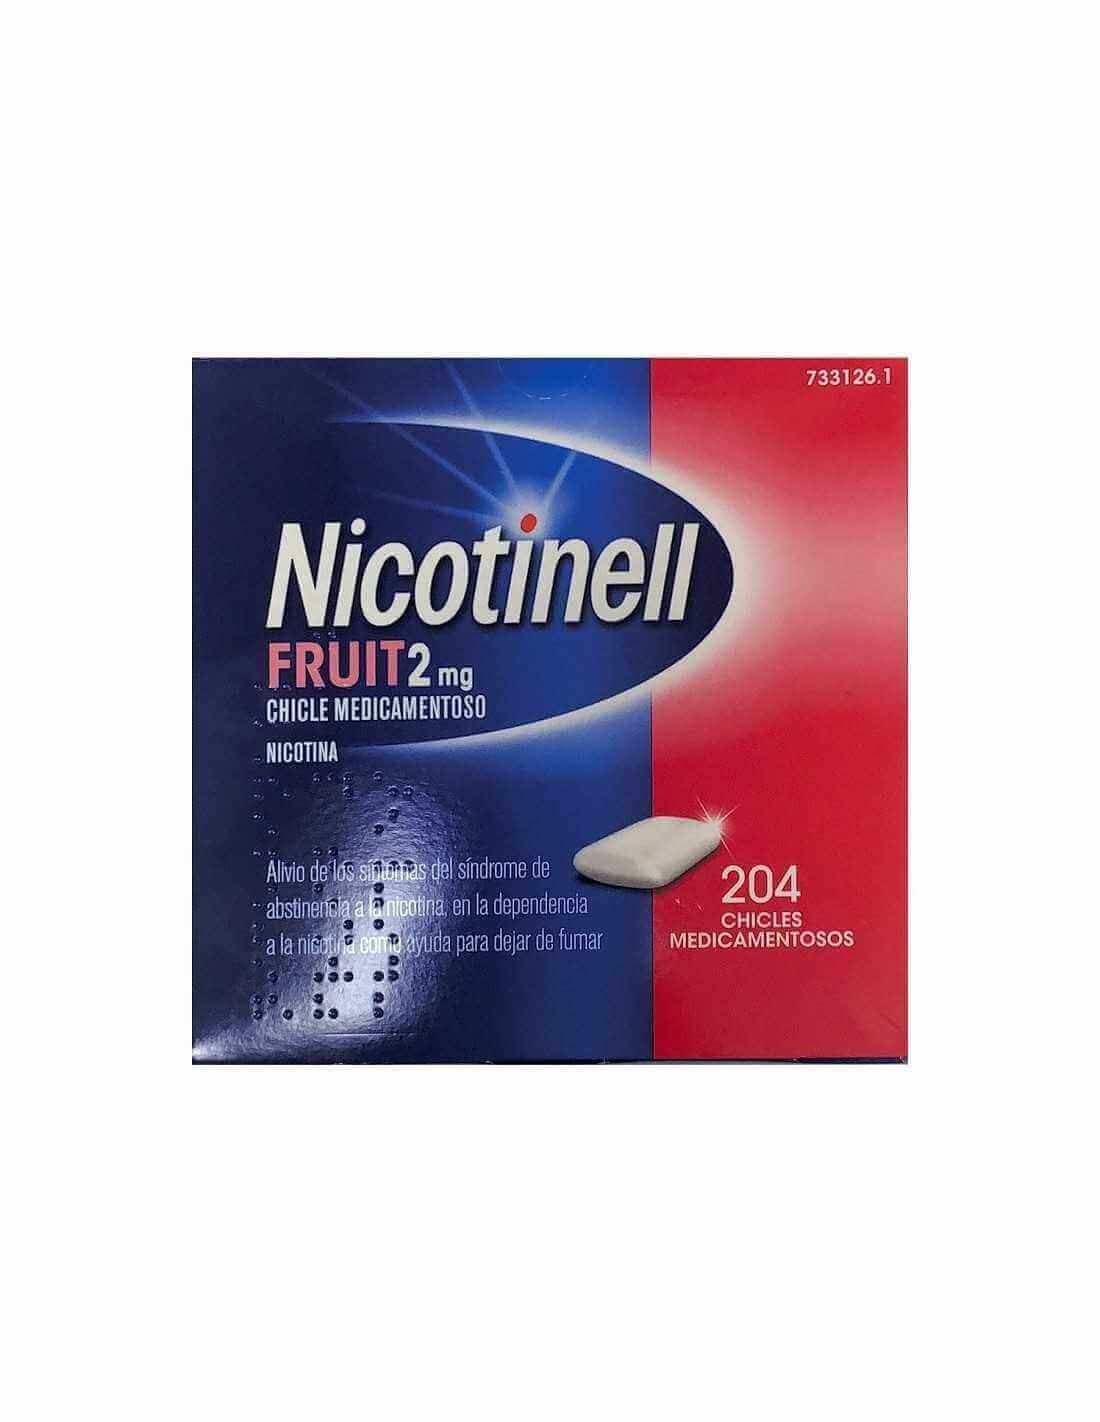 Nicotinell fruit 2 mg 24 chicles ayuda a dejar de fumar.